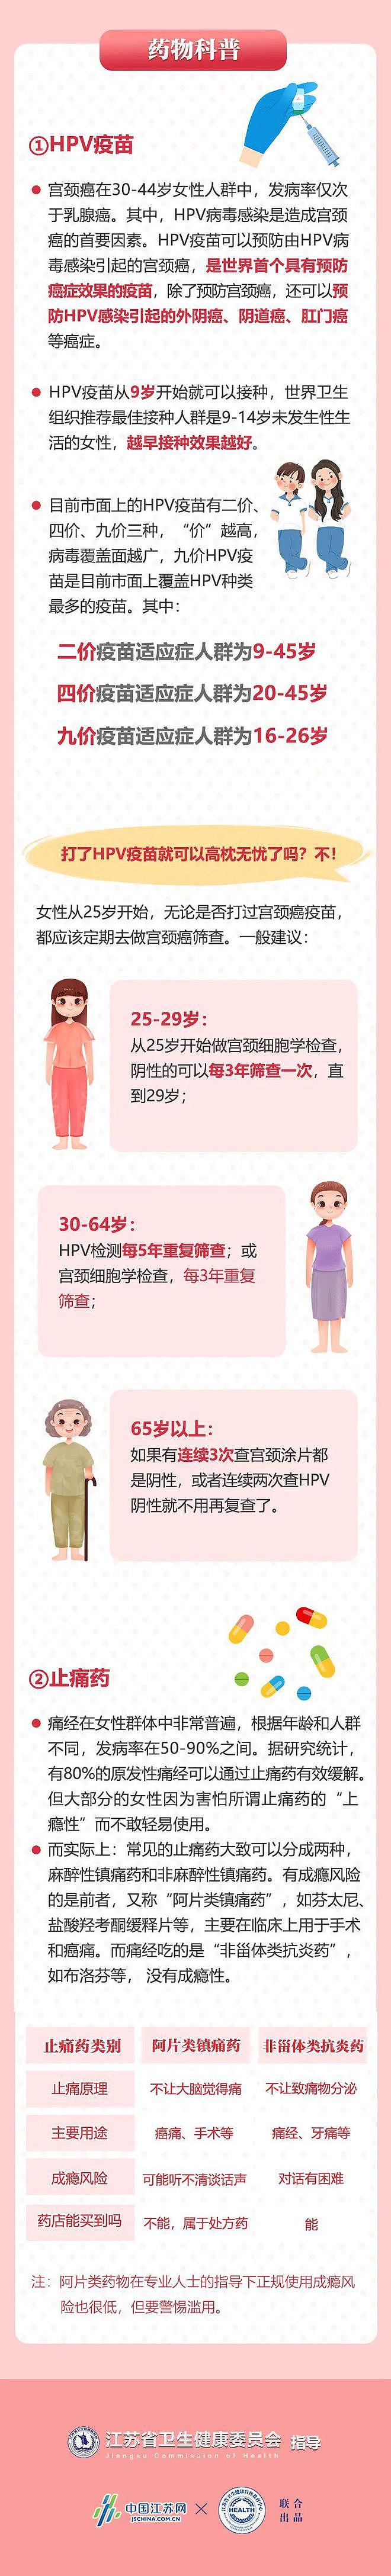 「健康中国 母亲行动」@姐妹们，这份女性健康知识图解请收藏 - 5